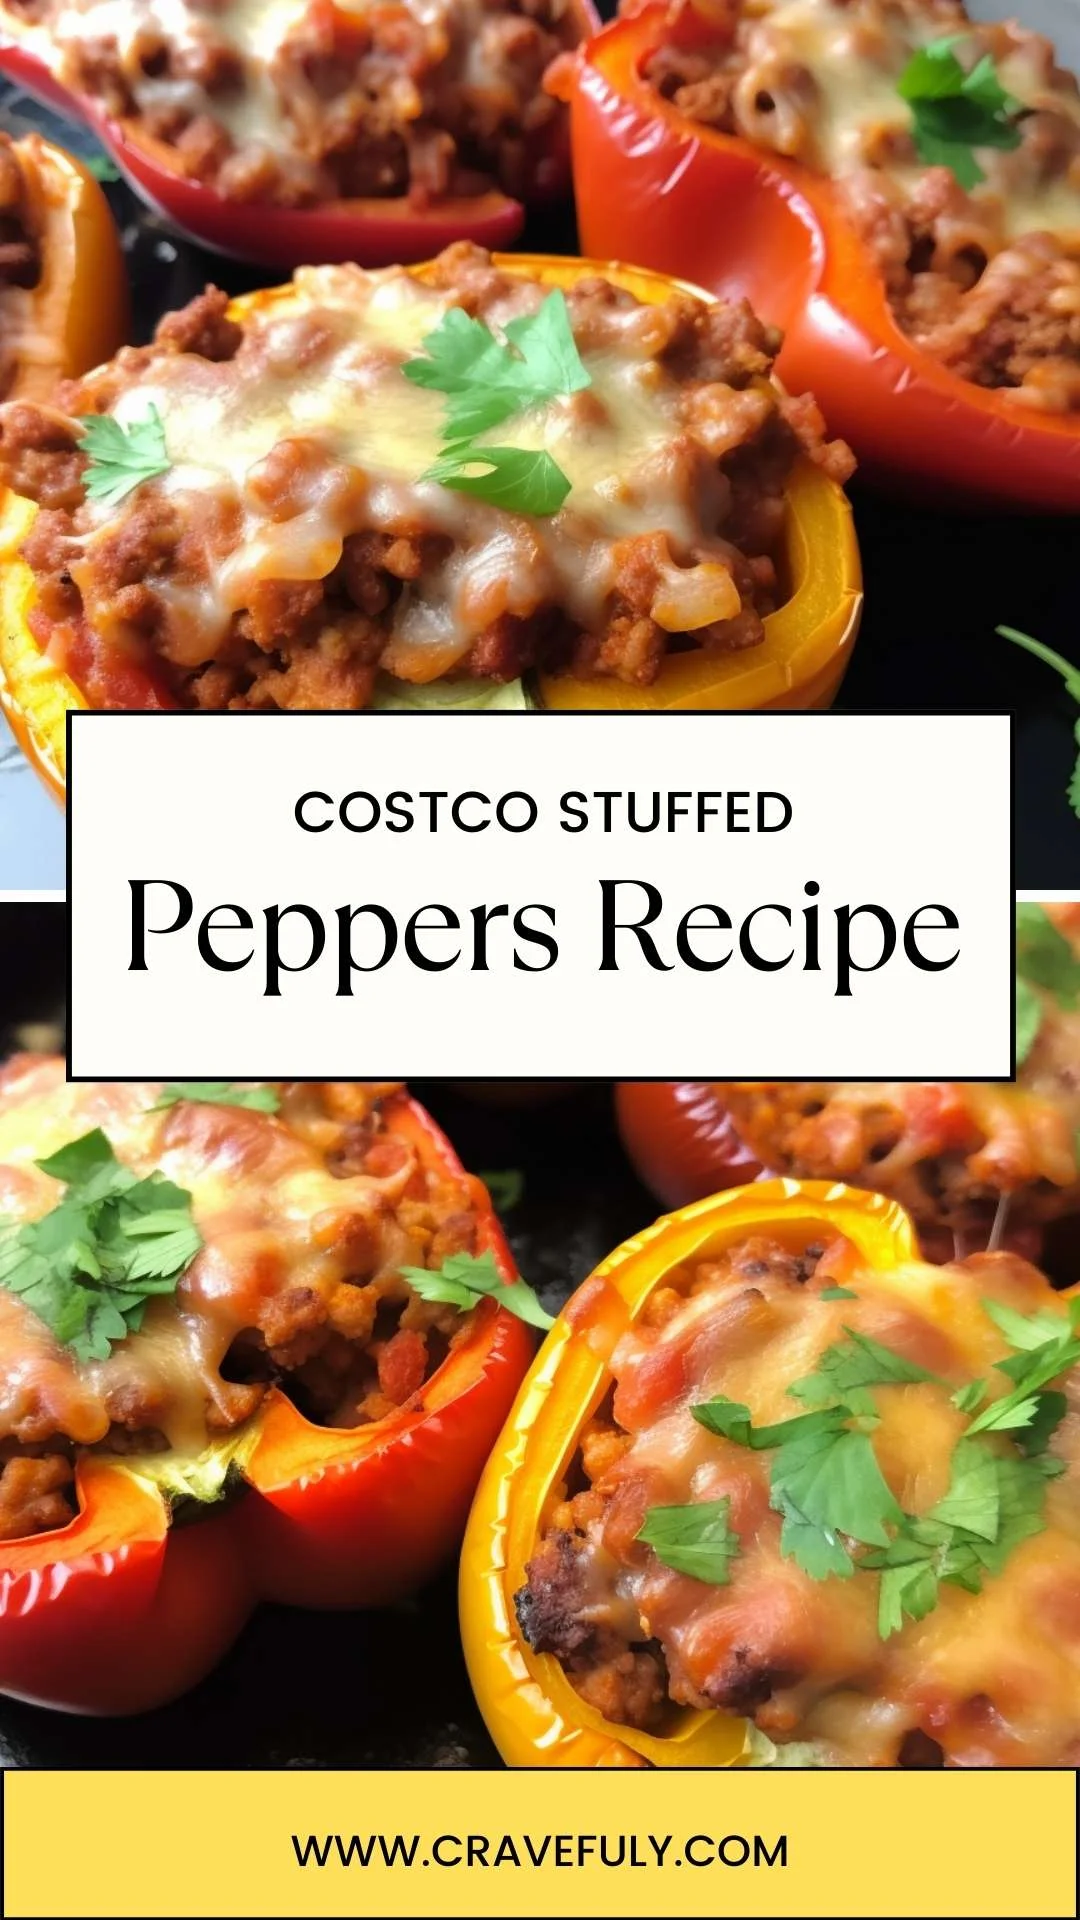 Costco Stuffed Peppers Recipe